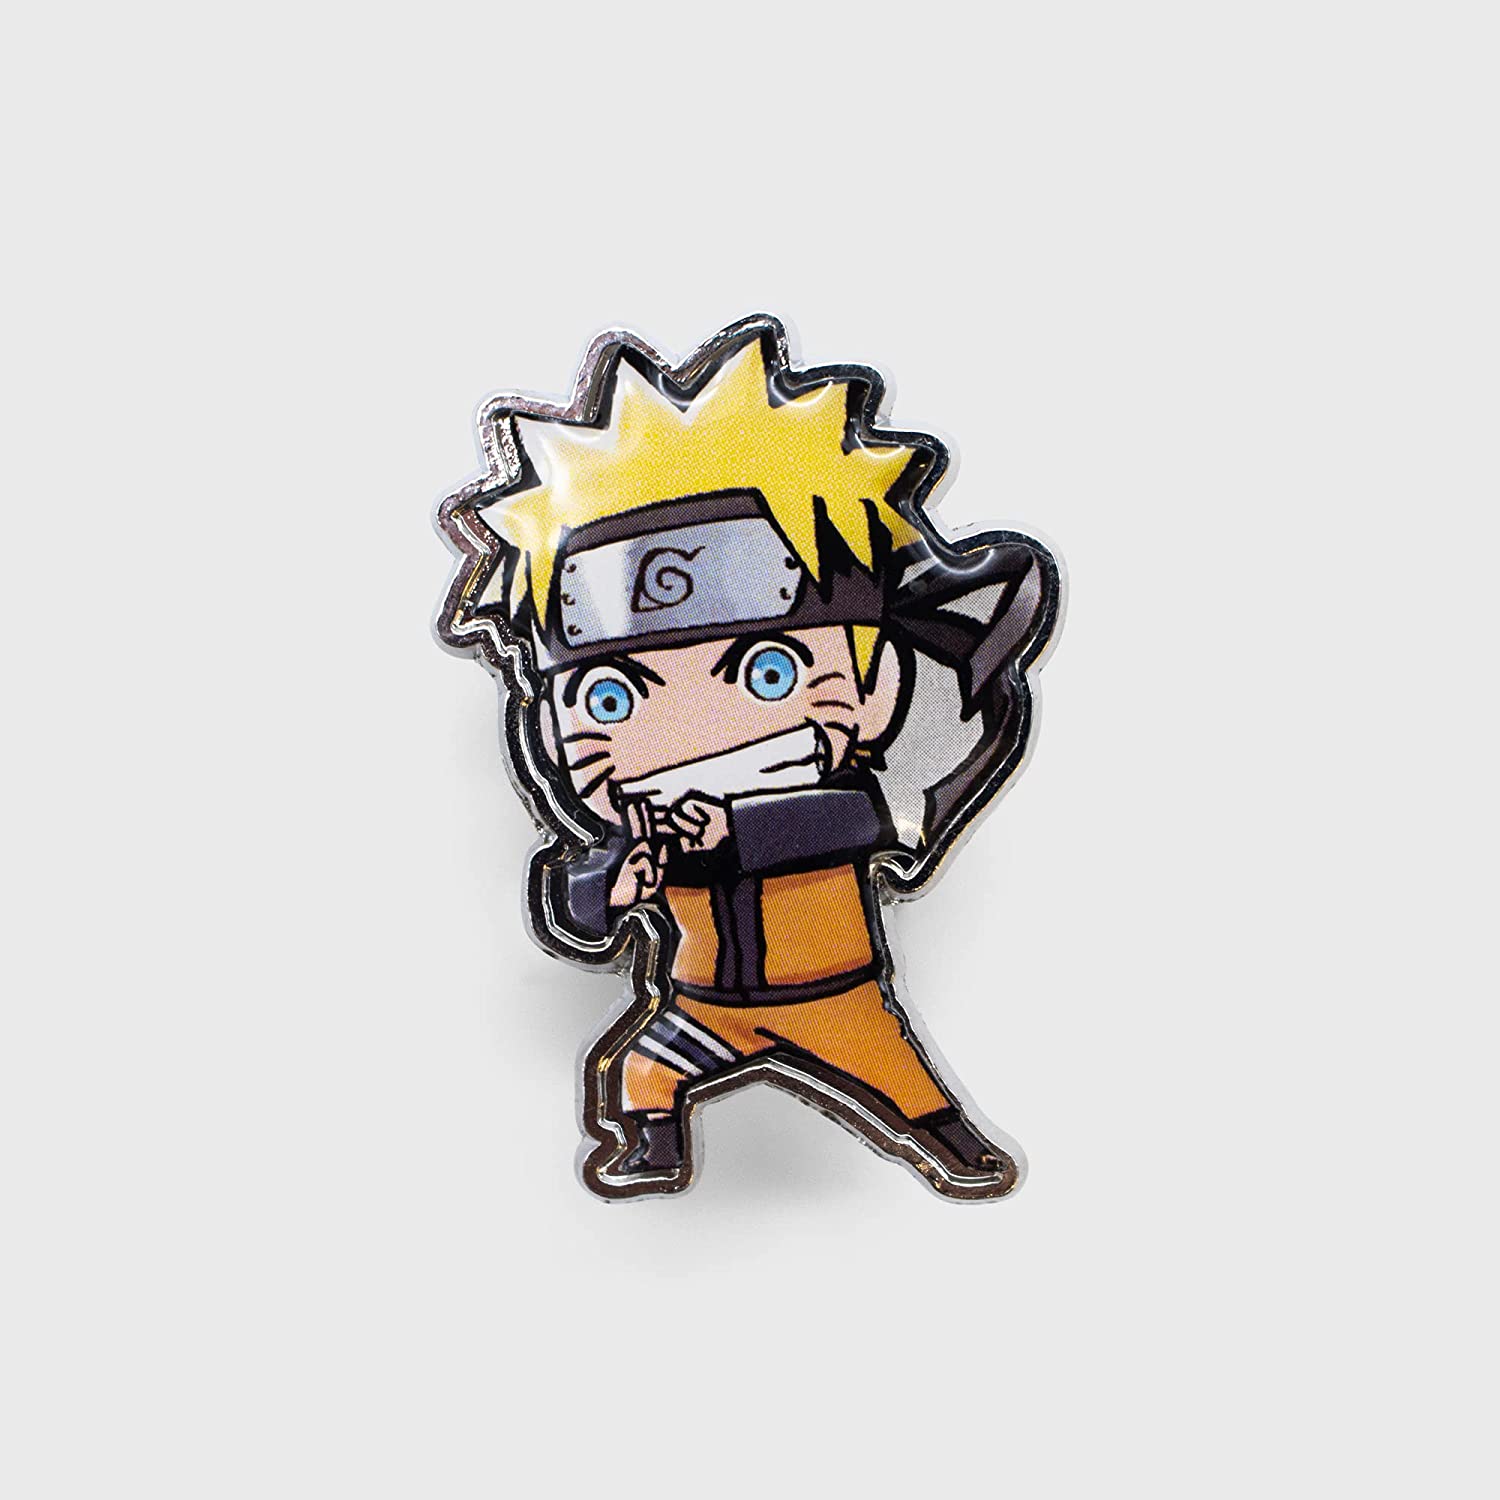 Naruto Pins